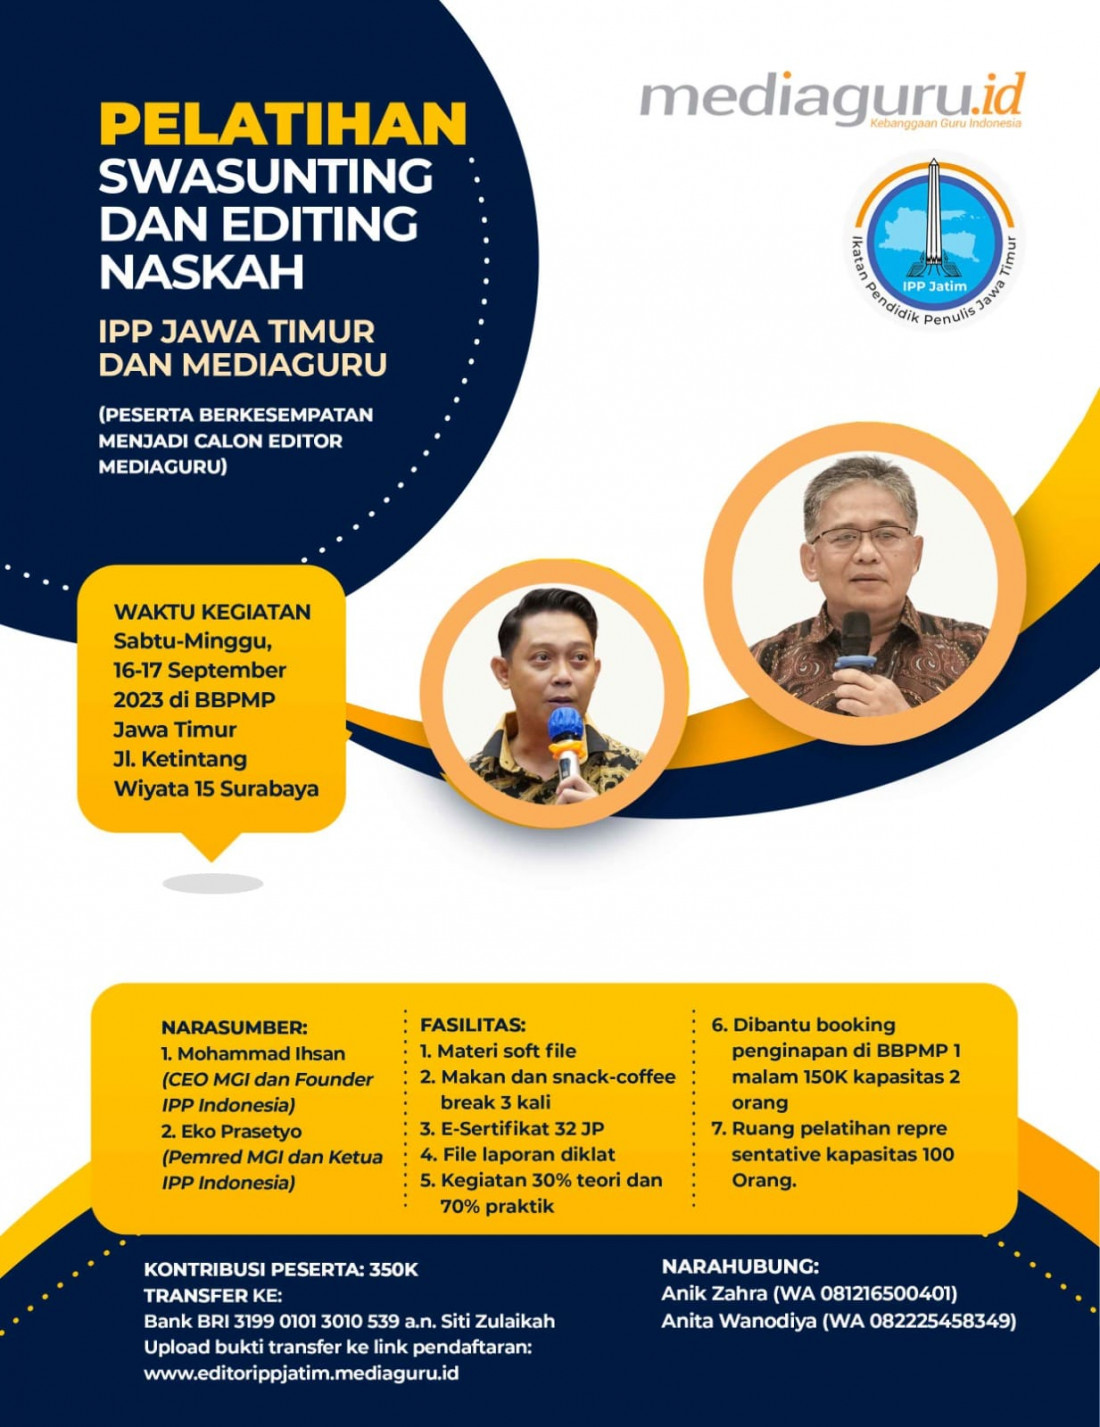 Pelatihan Swasunting dan Editing Naskah IPP Jatim (16-17 September 2023)